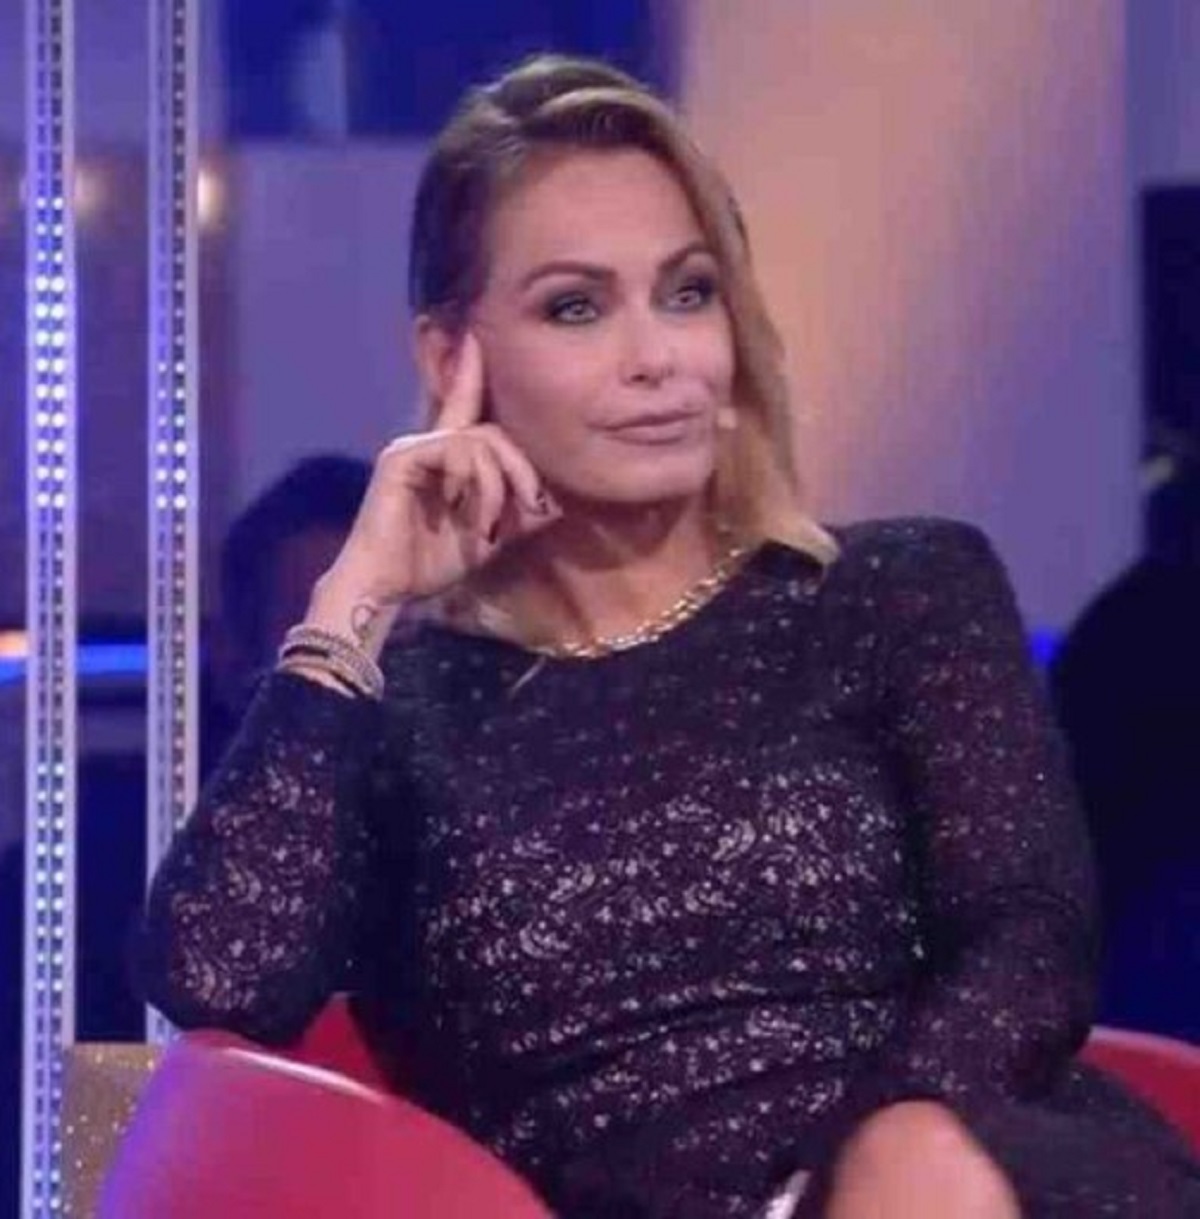 “Mi licenzio”. GF Vip 7, Sonia Bruganelli stanca degli insulti: sfuriata dopo la puntata